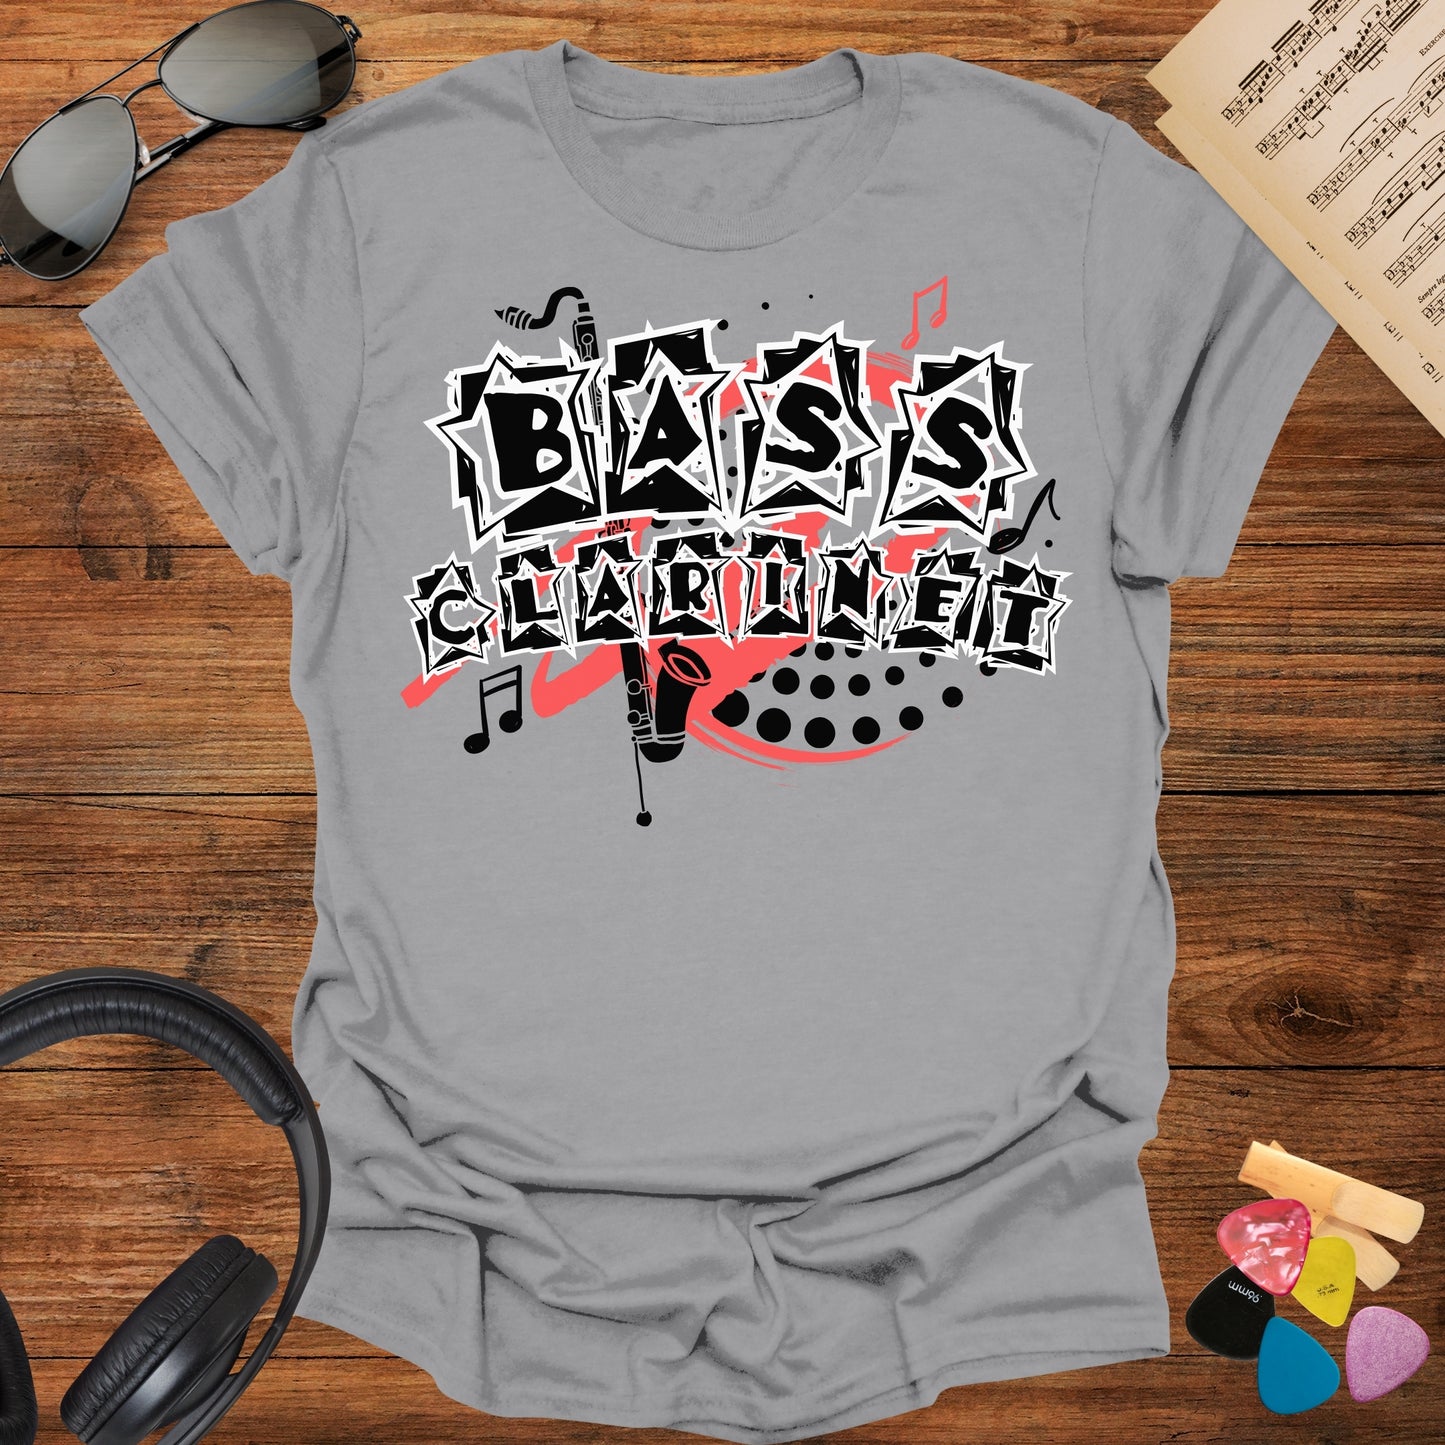 Bass Clarinet T-Shirt